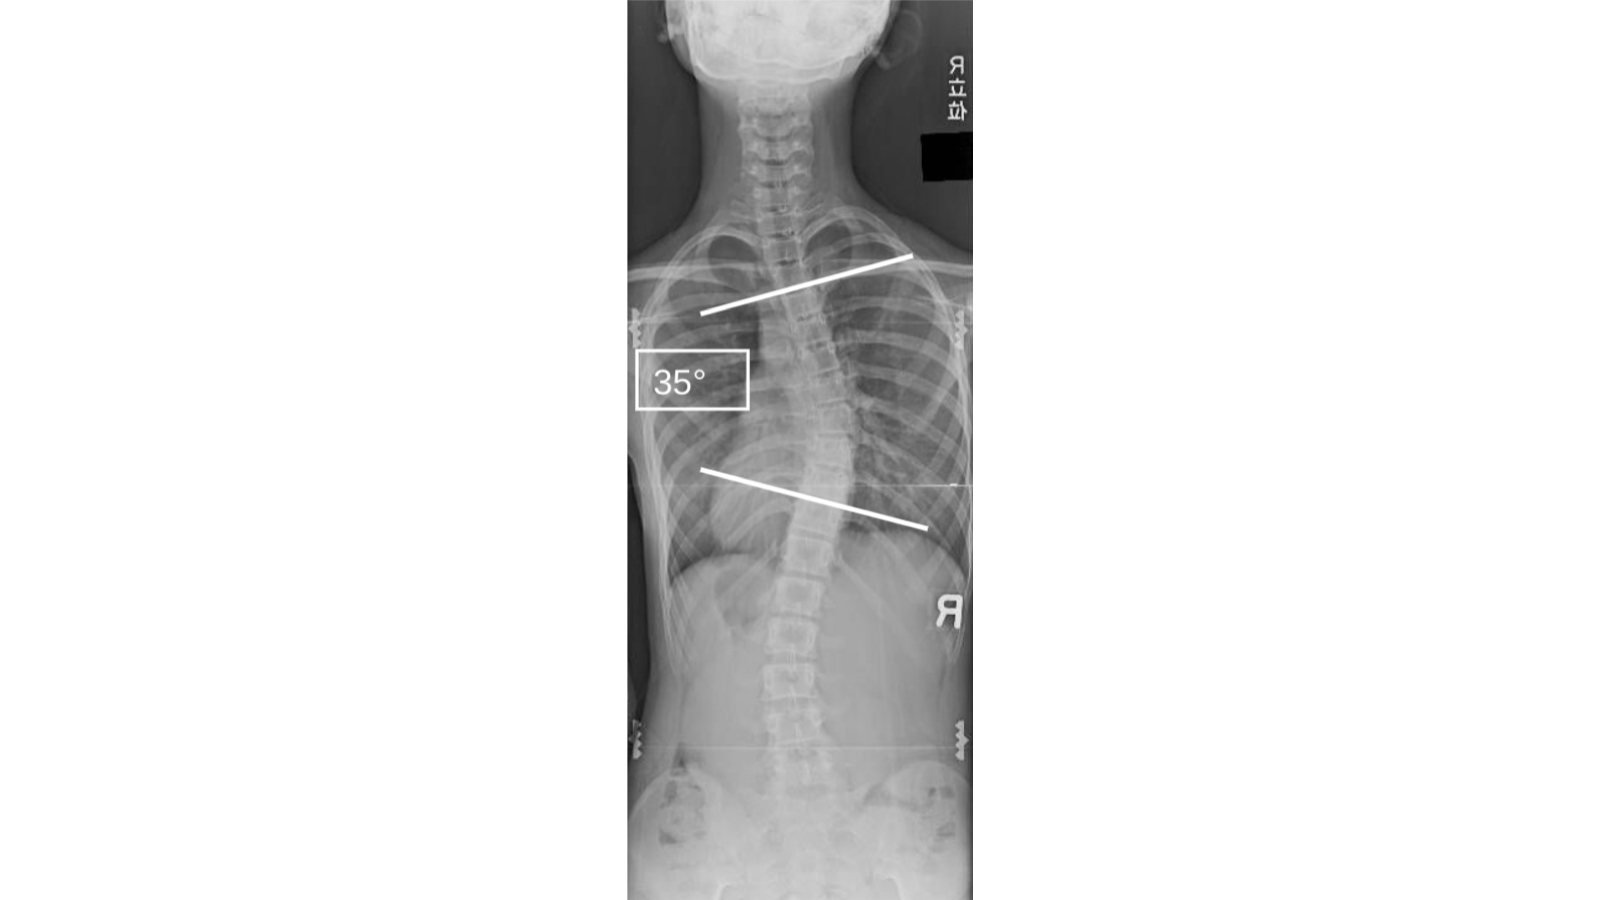 思春期特発性側弯症の症例の背部から撮像したレントゲン（10歳台 女性 コブ角35度の中等症）